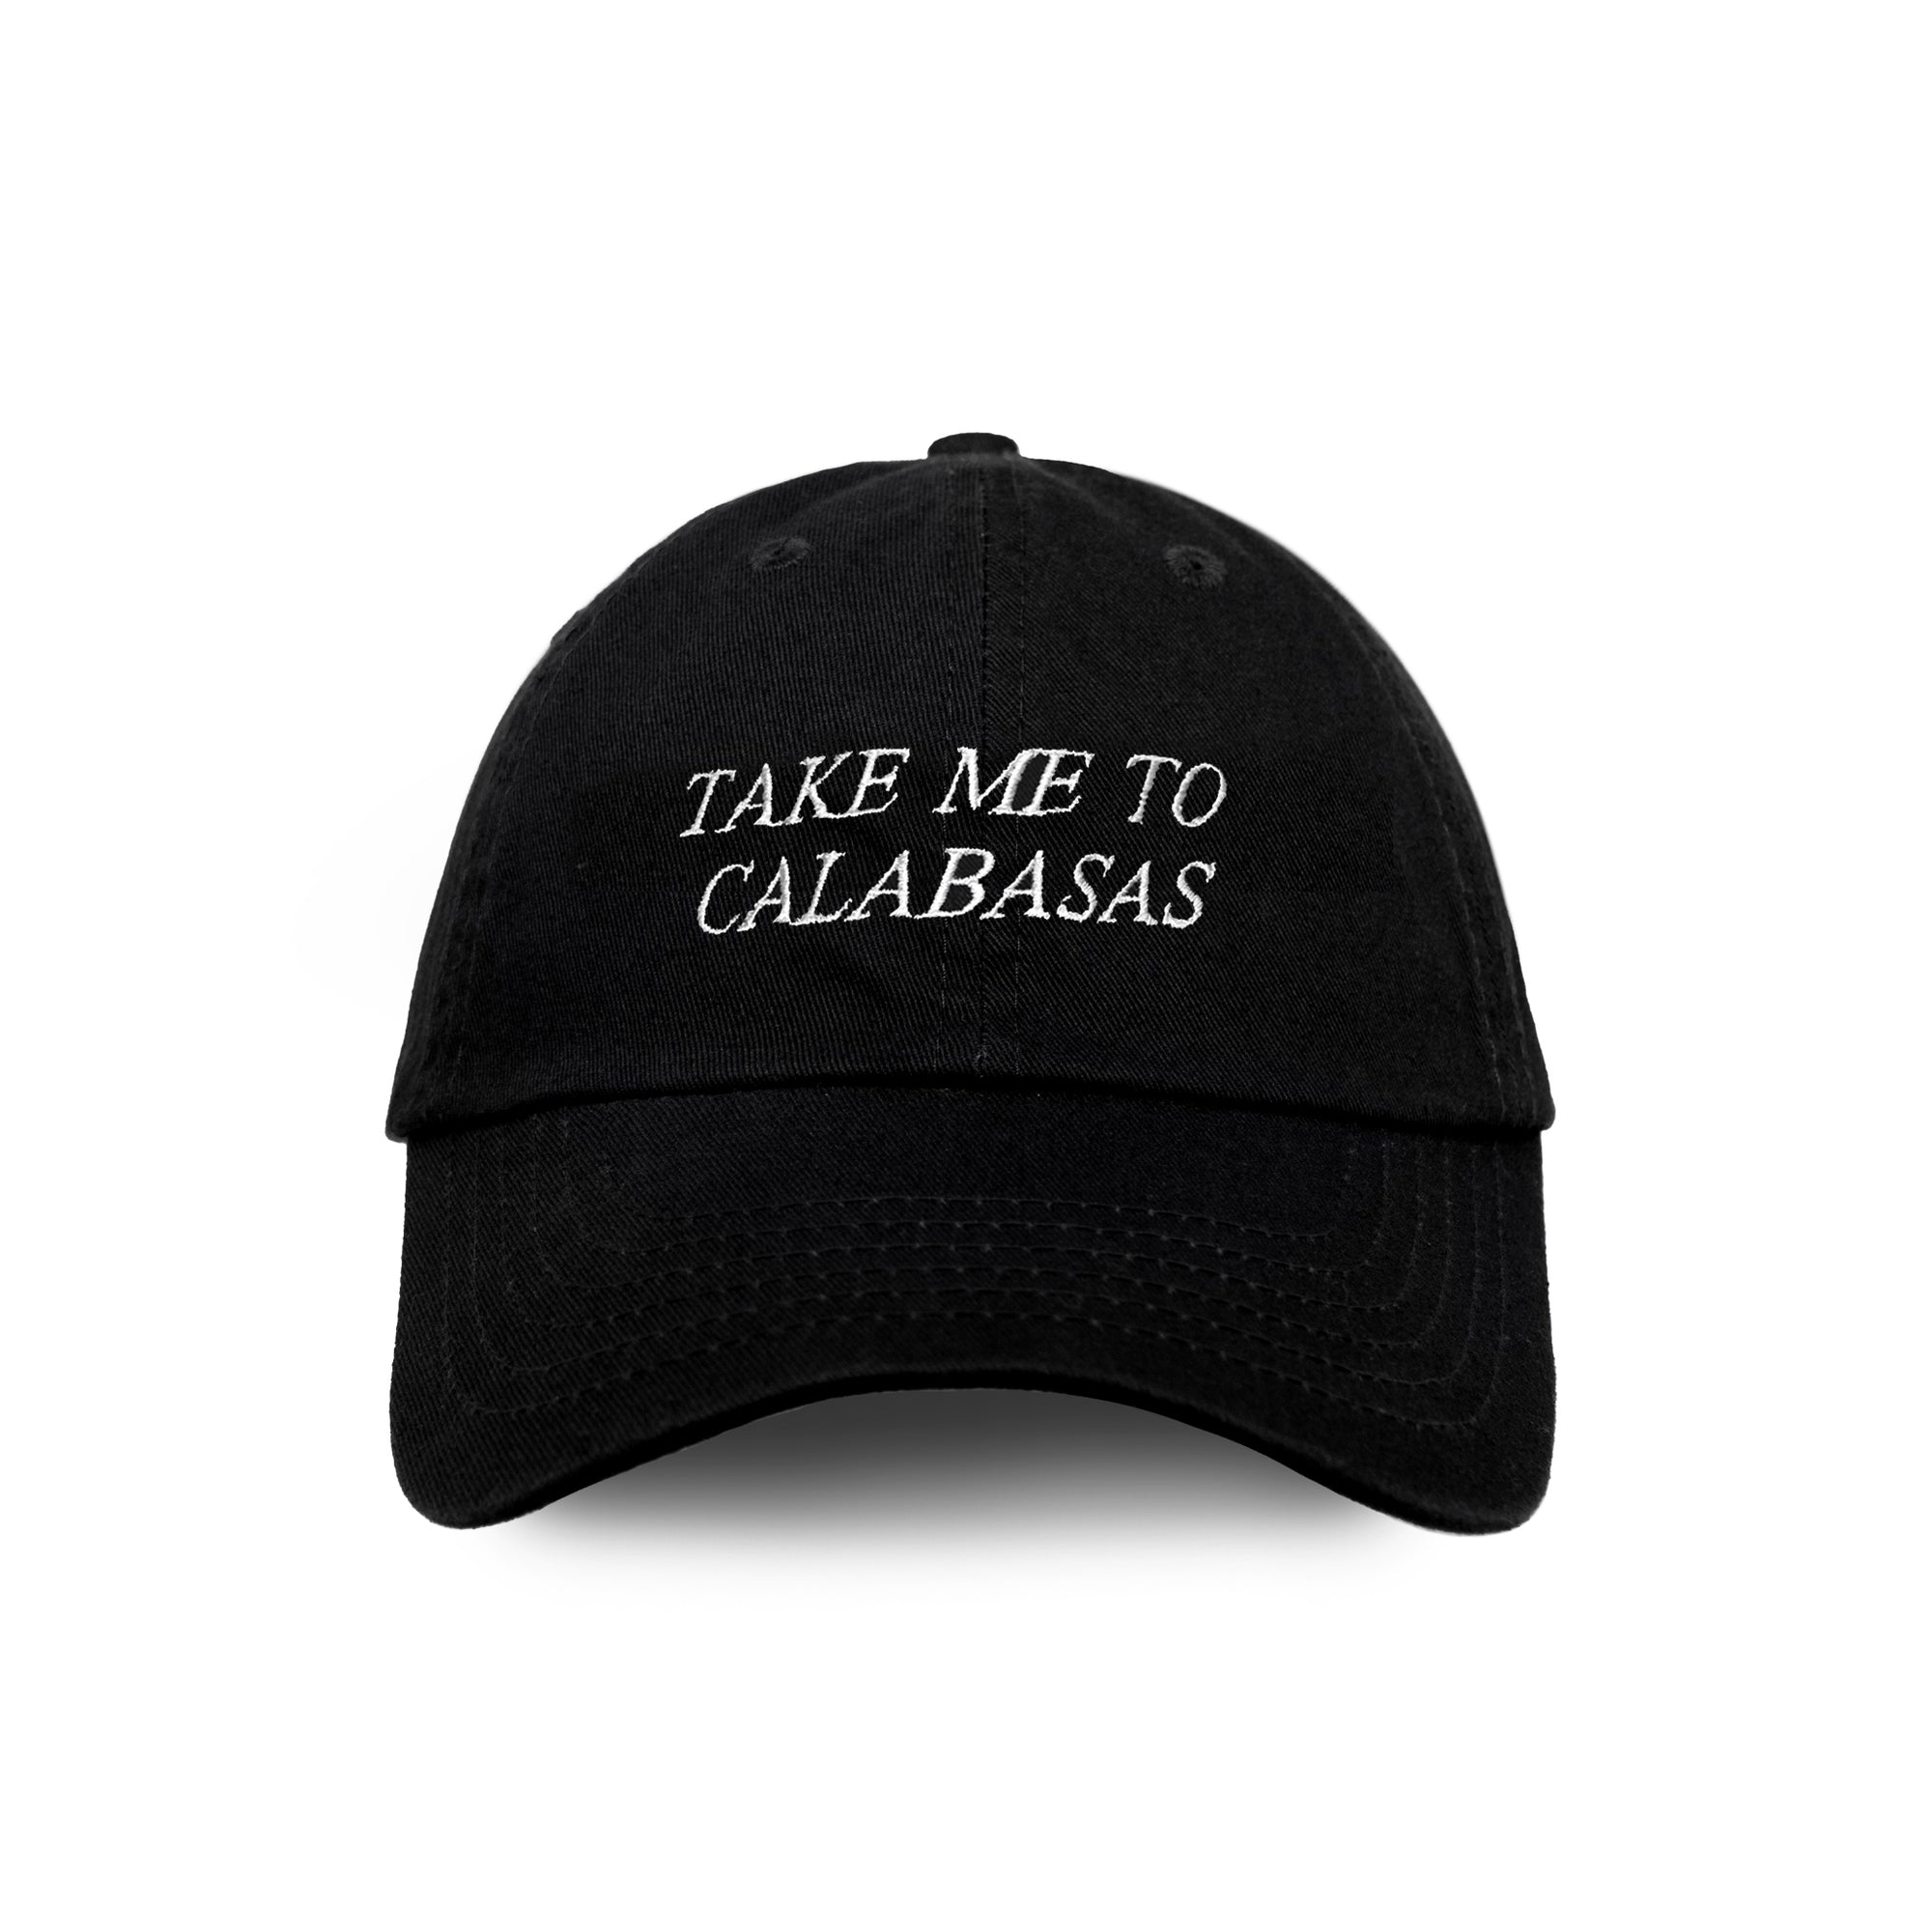 TAKE ME TO CALABASAS